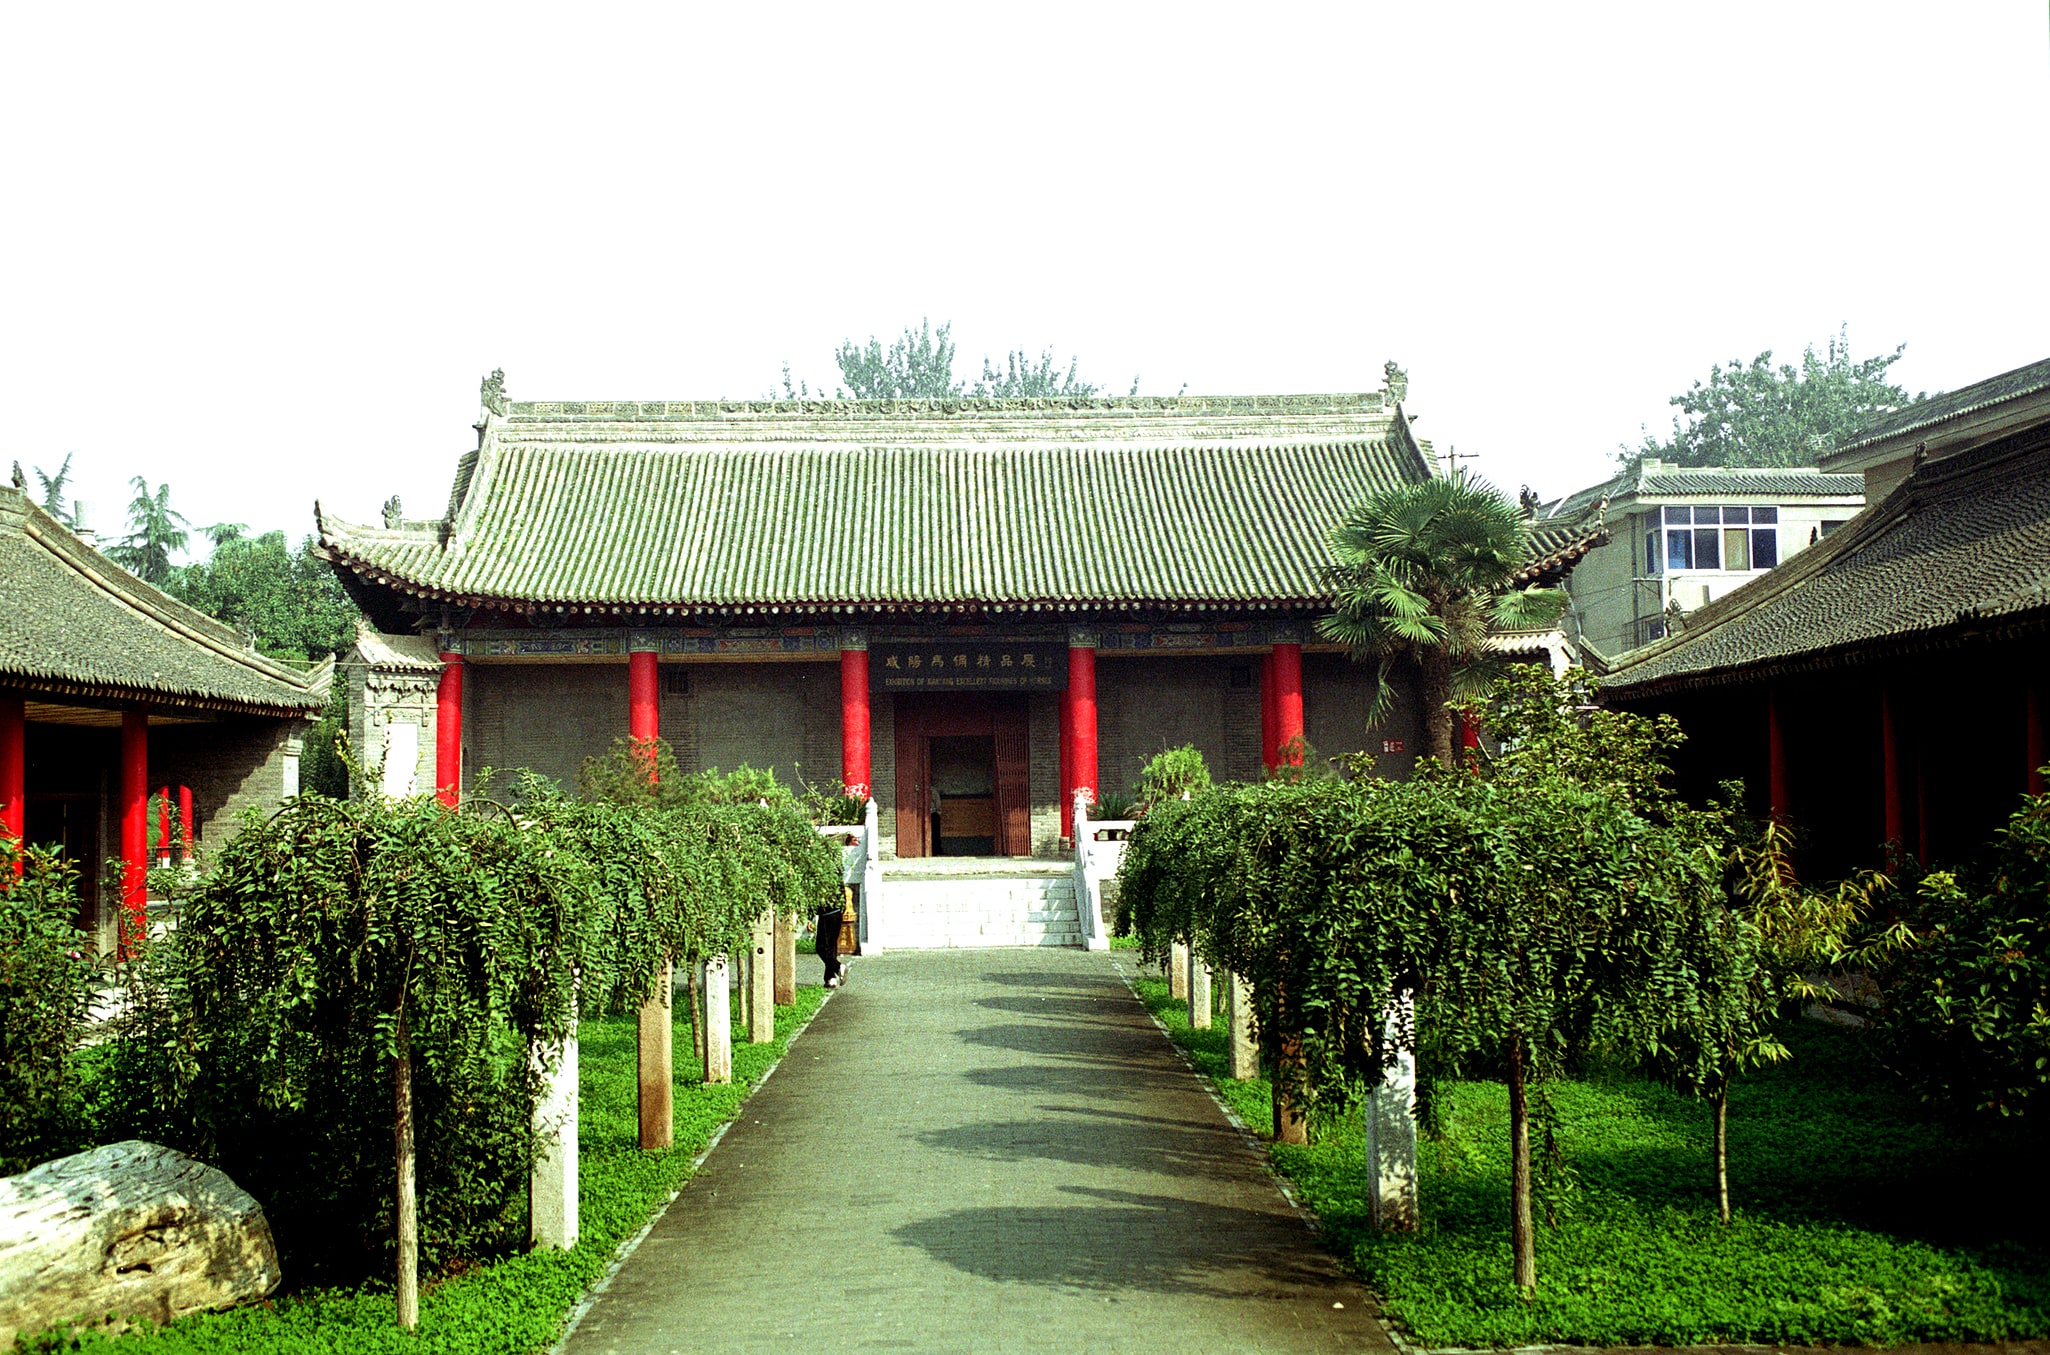 Xianyang, China